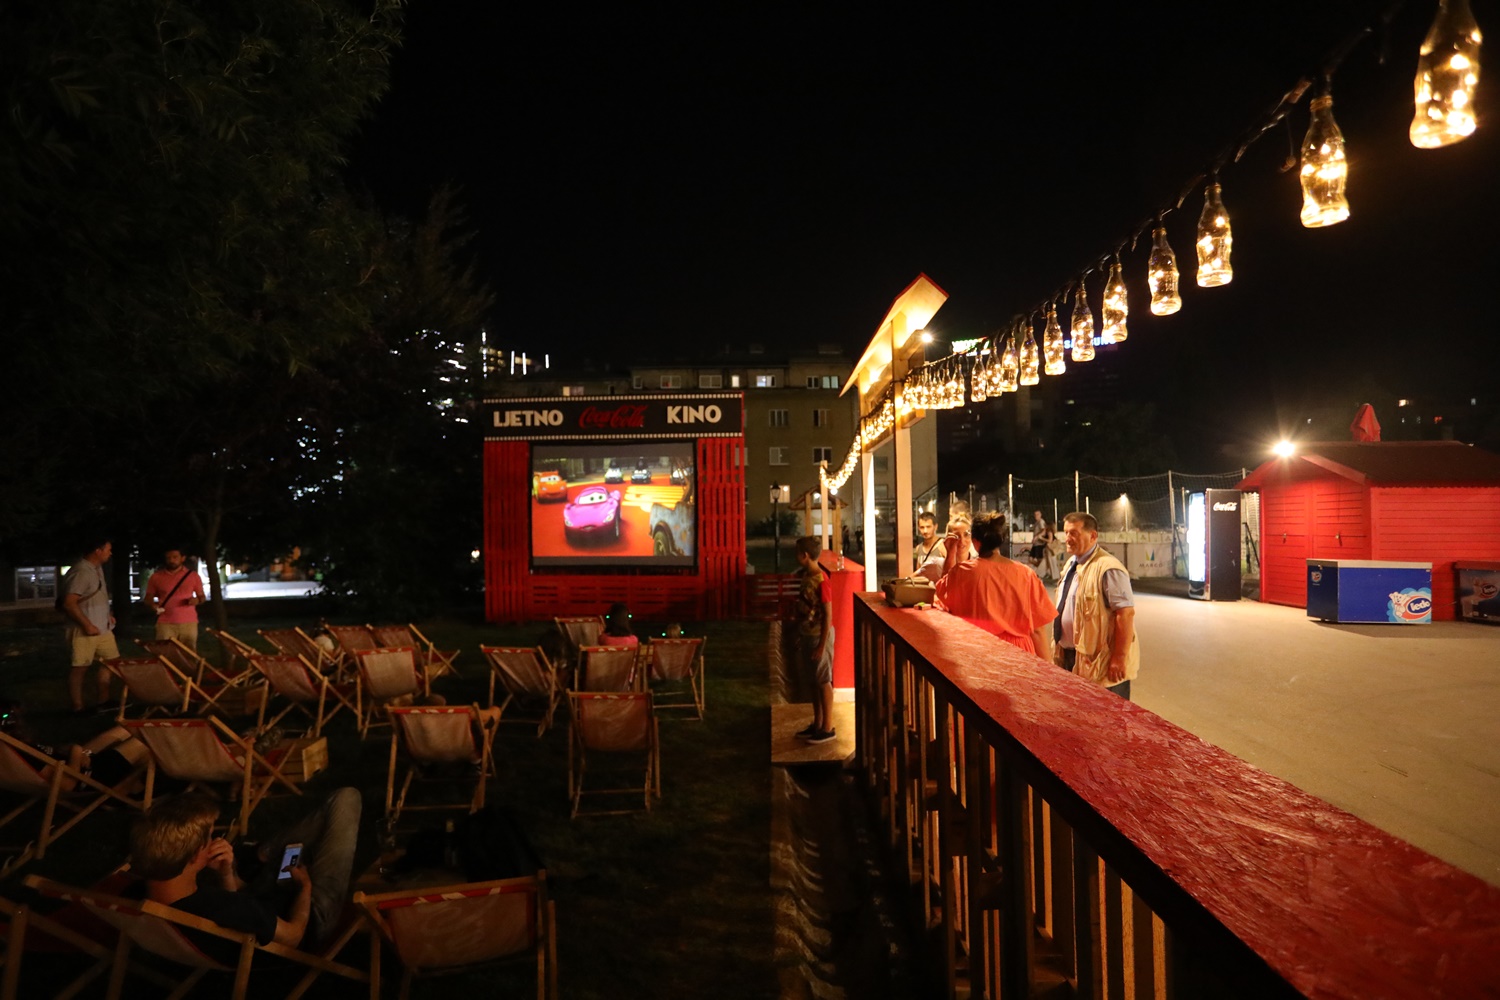  U sklopu događaja Ljeto u parku – Hastahana s radom počinje besplatno ljetno kino